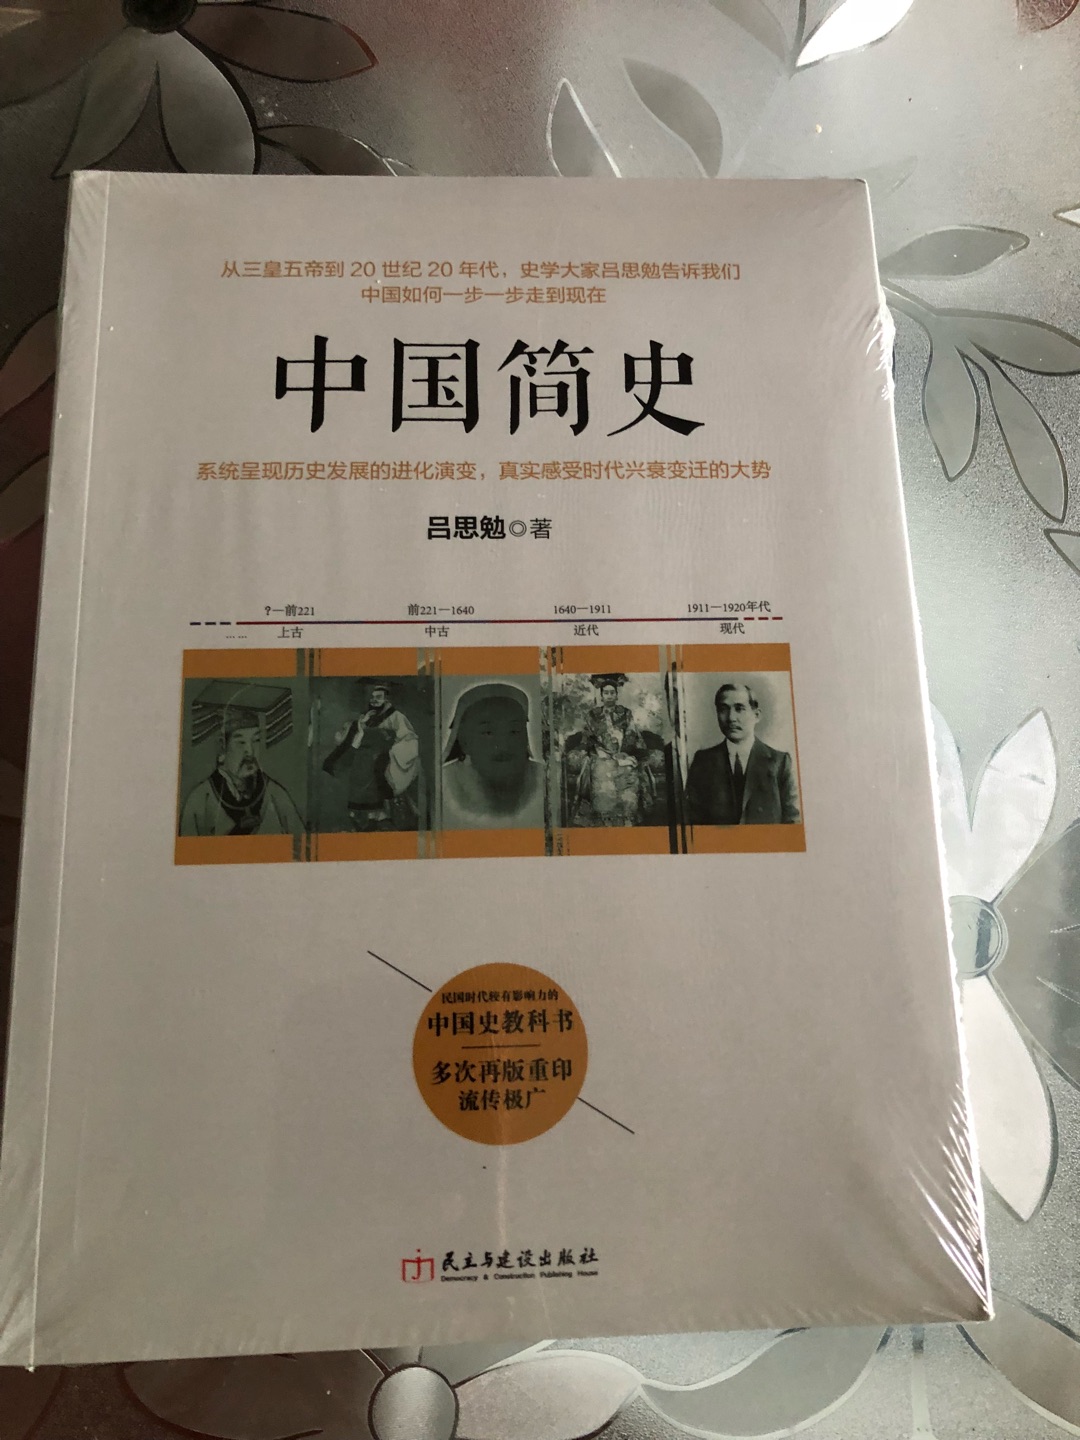 多读点书，多读点历史，总是没错的，中国史一半辉煌一半沧桑